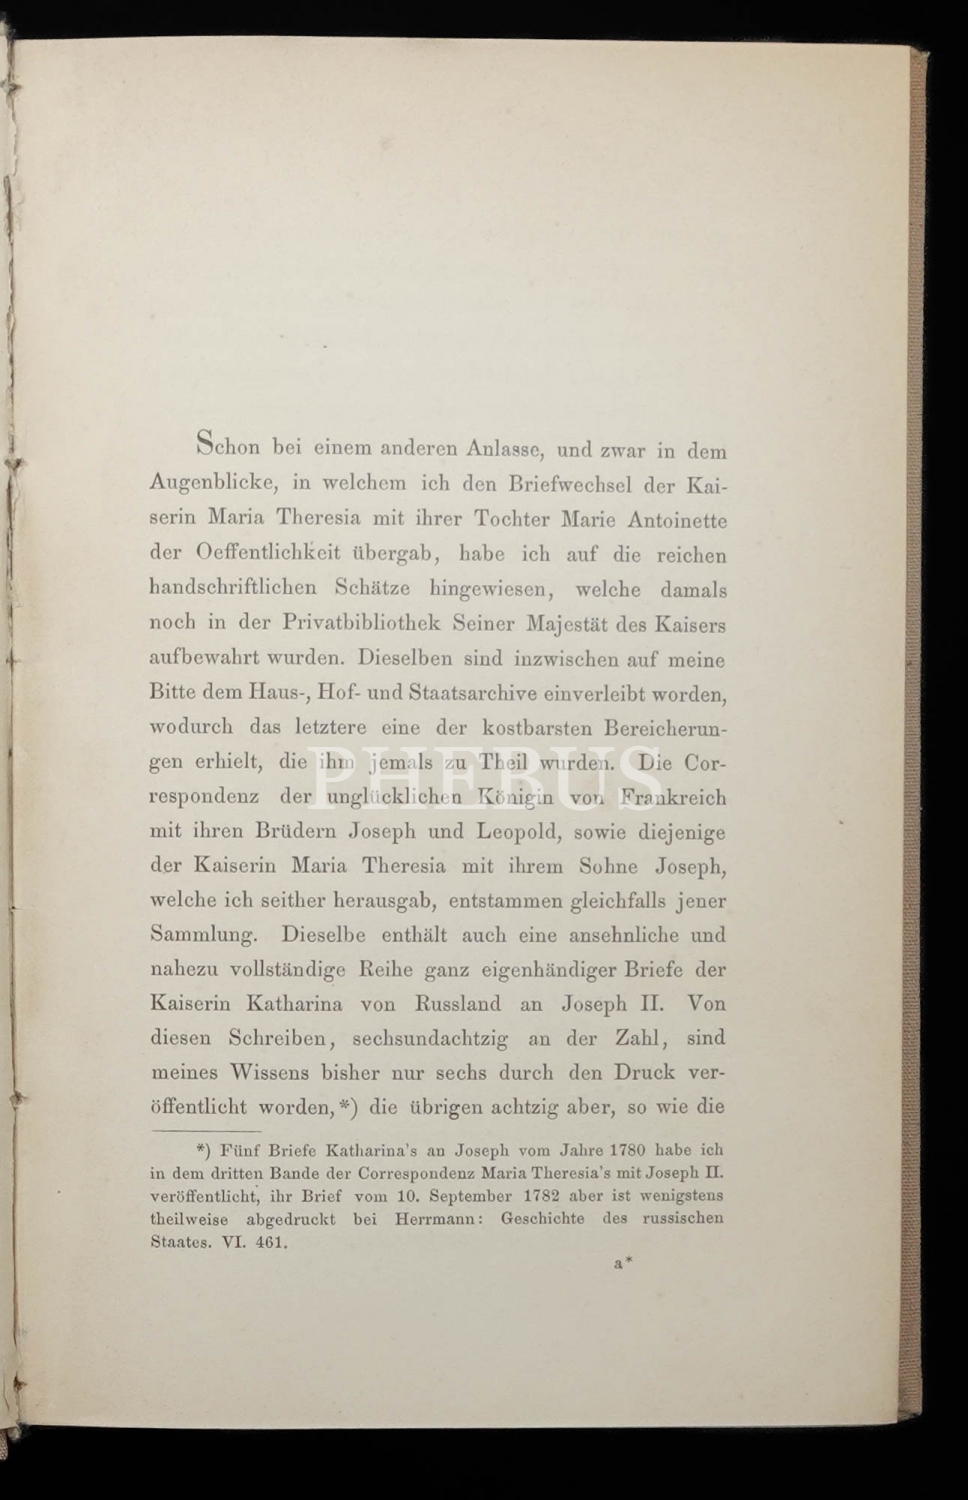 JOSEPH II. UND KATHARINA VON RUSSLAND, Ihr Briefwechsel, 1869, Wien, Wilhelm Braumüller, 393 sayfa, 16x23 cm...